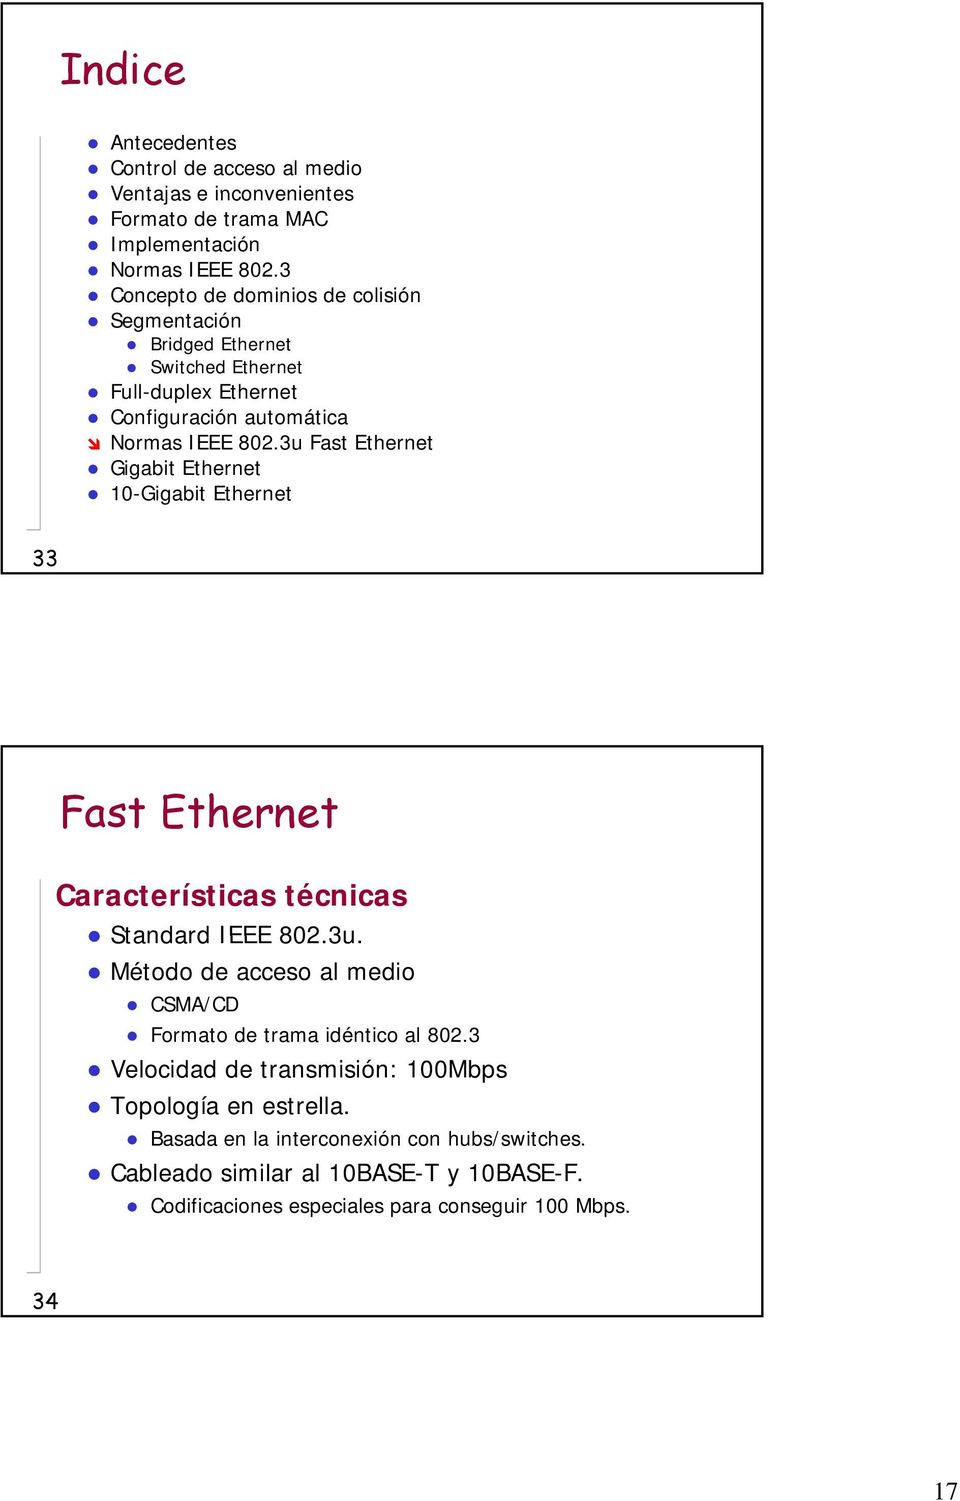 3u Fast Ethernet Gigabit Ethernet 10-Gigabit Ethernet 33 Fast Ethernet Características técnicas Standard IEEE 802.3u. Método de acceso al medio CSMA/CD Formato de trama idéntico al 802.